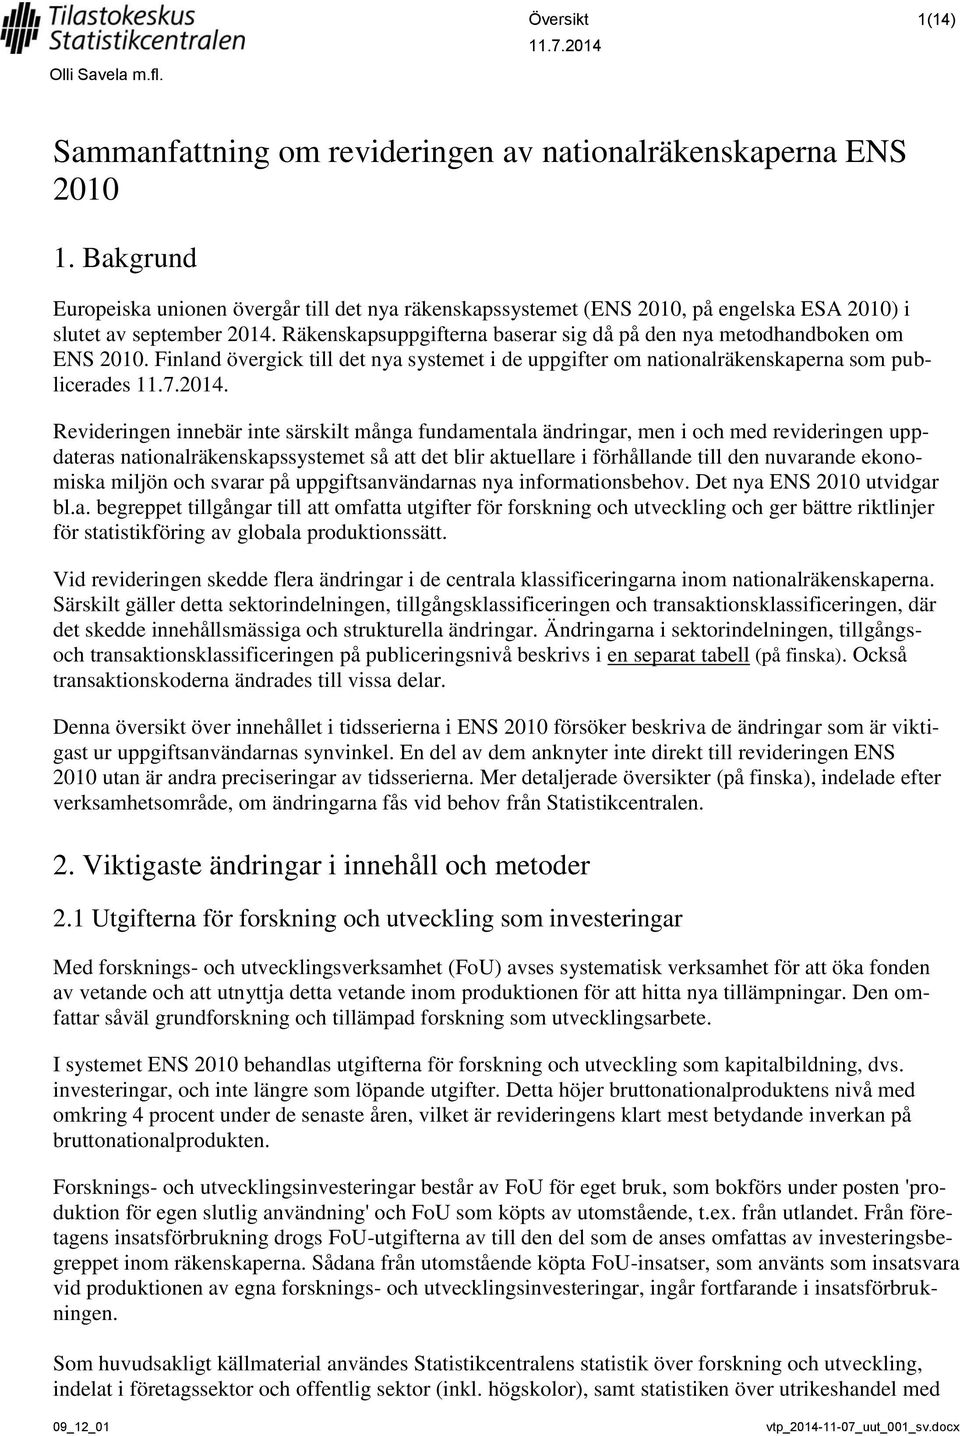 Räkenskapsuppgifterna baserar sig då på den nya metodhandboken om ENS 2010. Finland övergick till det nya systemet i de uppgifter om nationalräkenskaperna som publicerades.